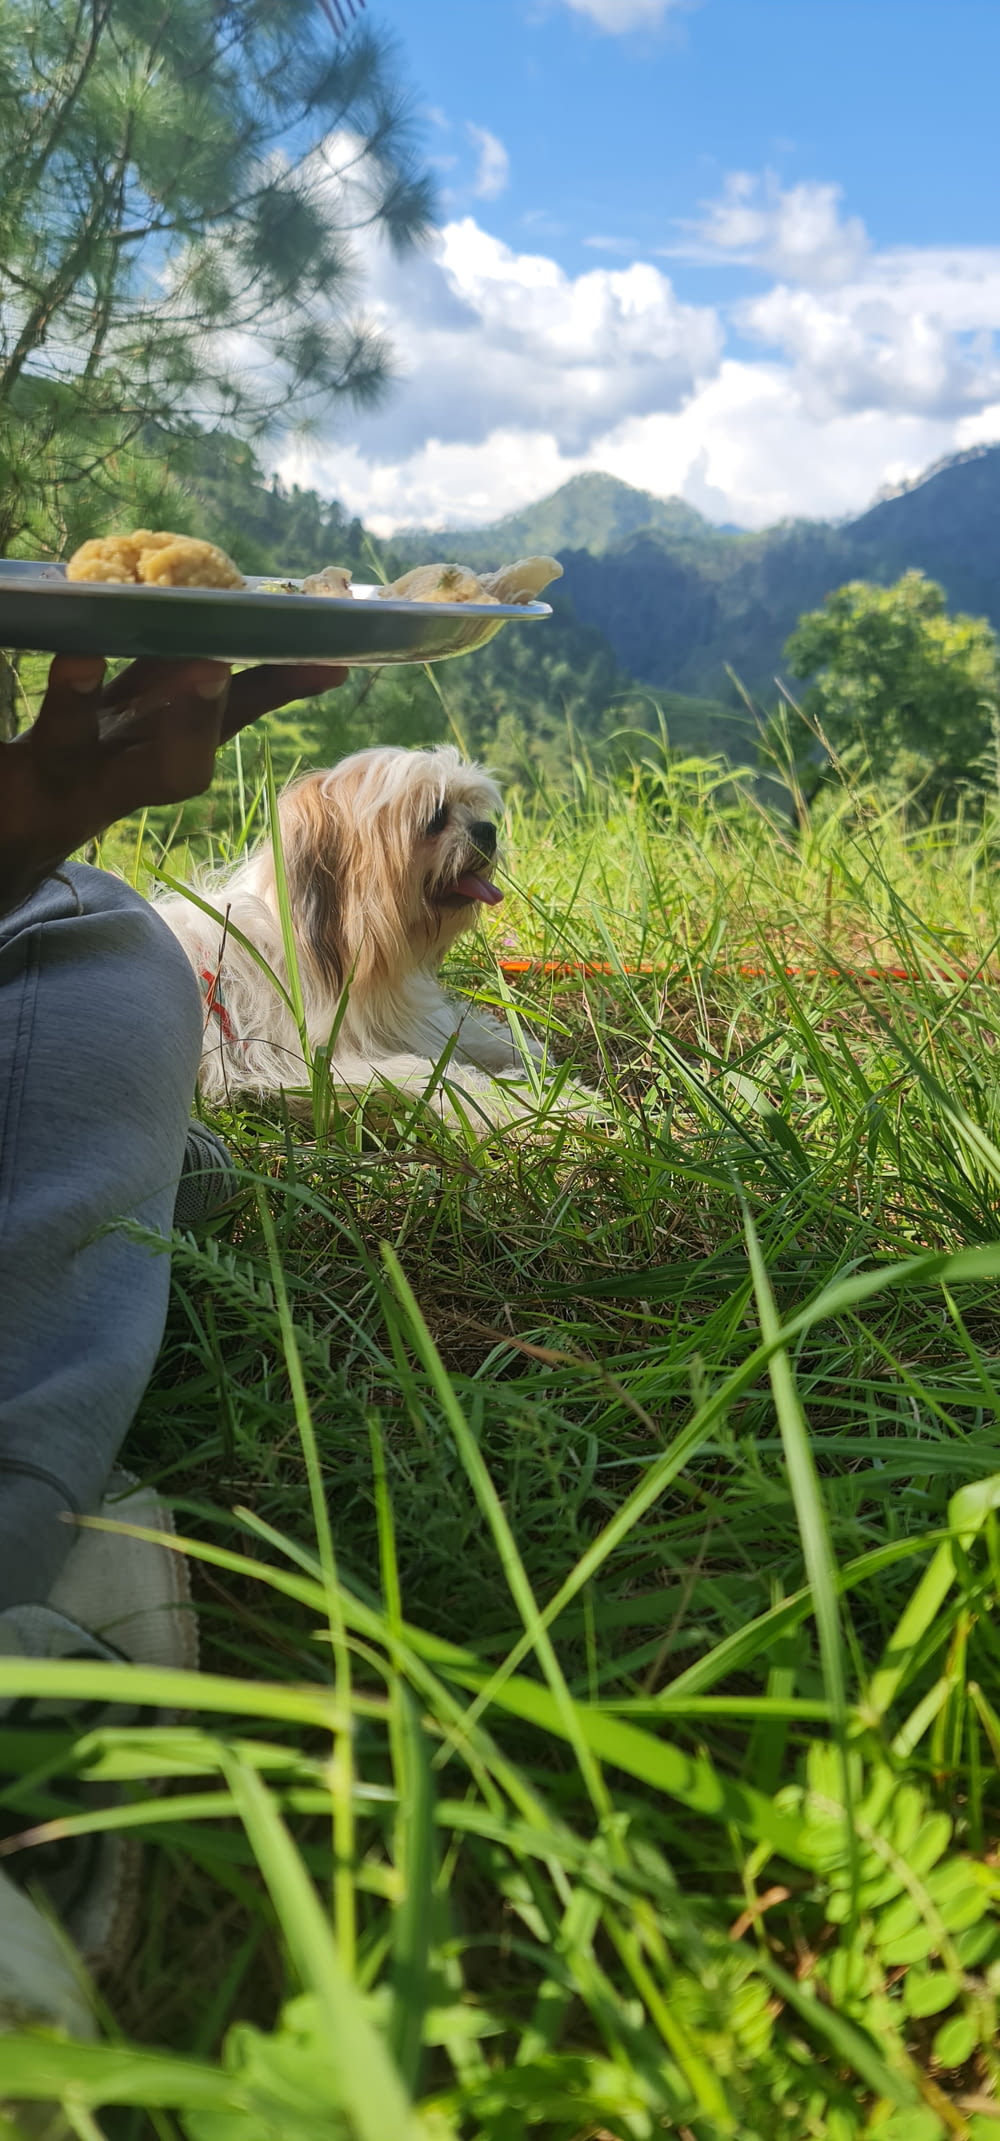 a dog sitting in a grassy field